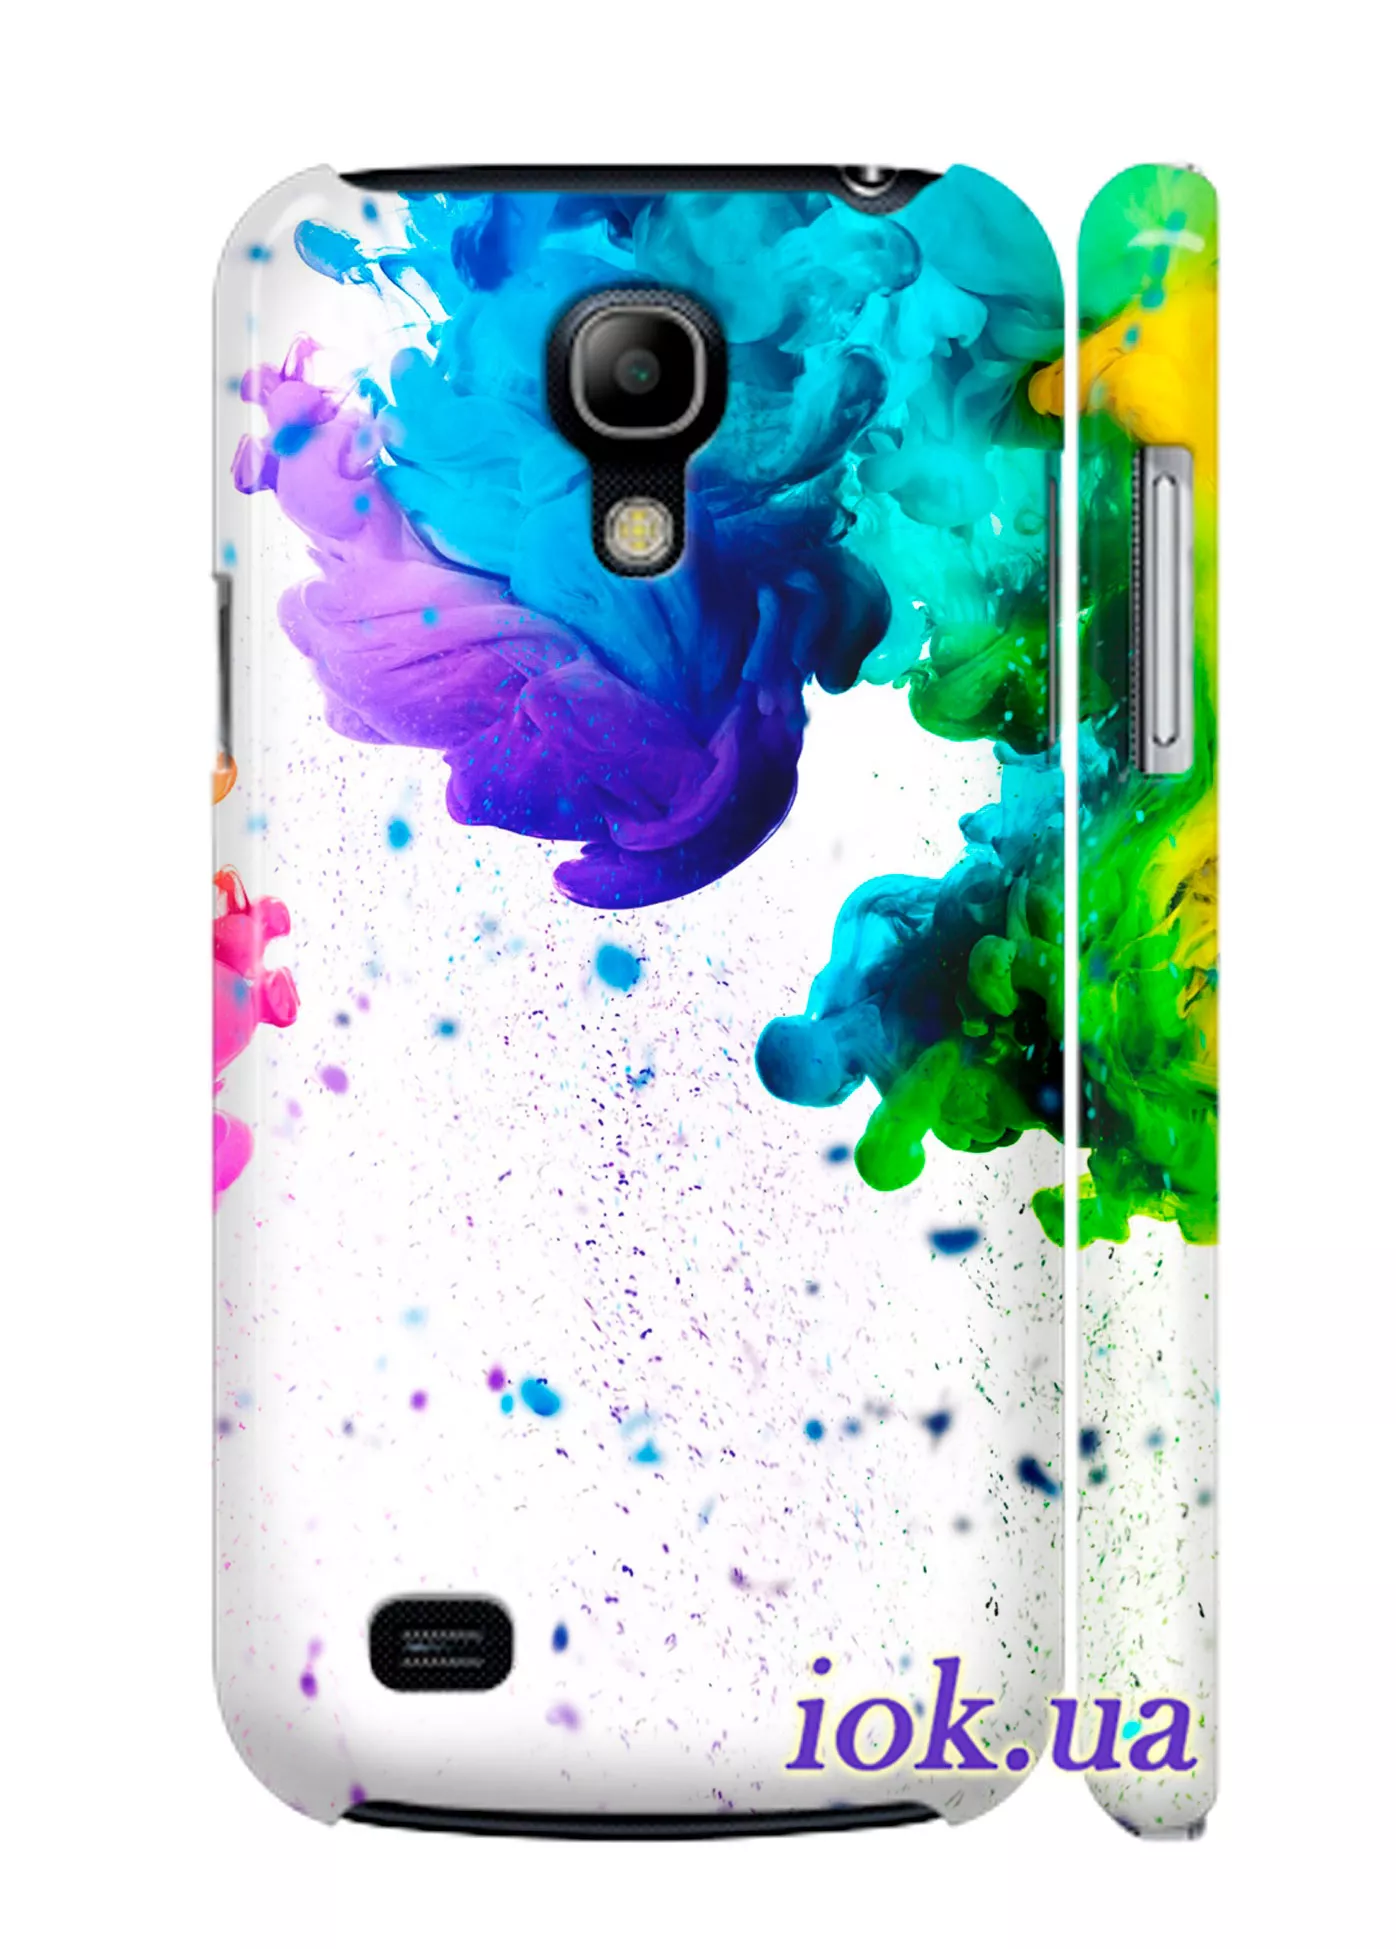 Чехол на Galaxy S4 mini - Яркие краски